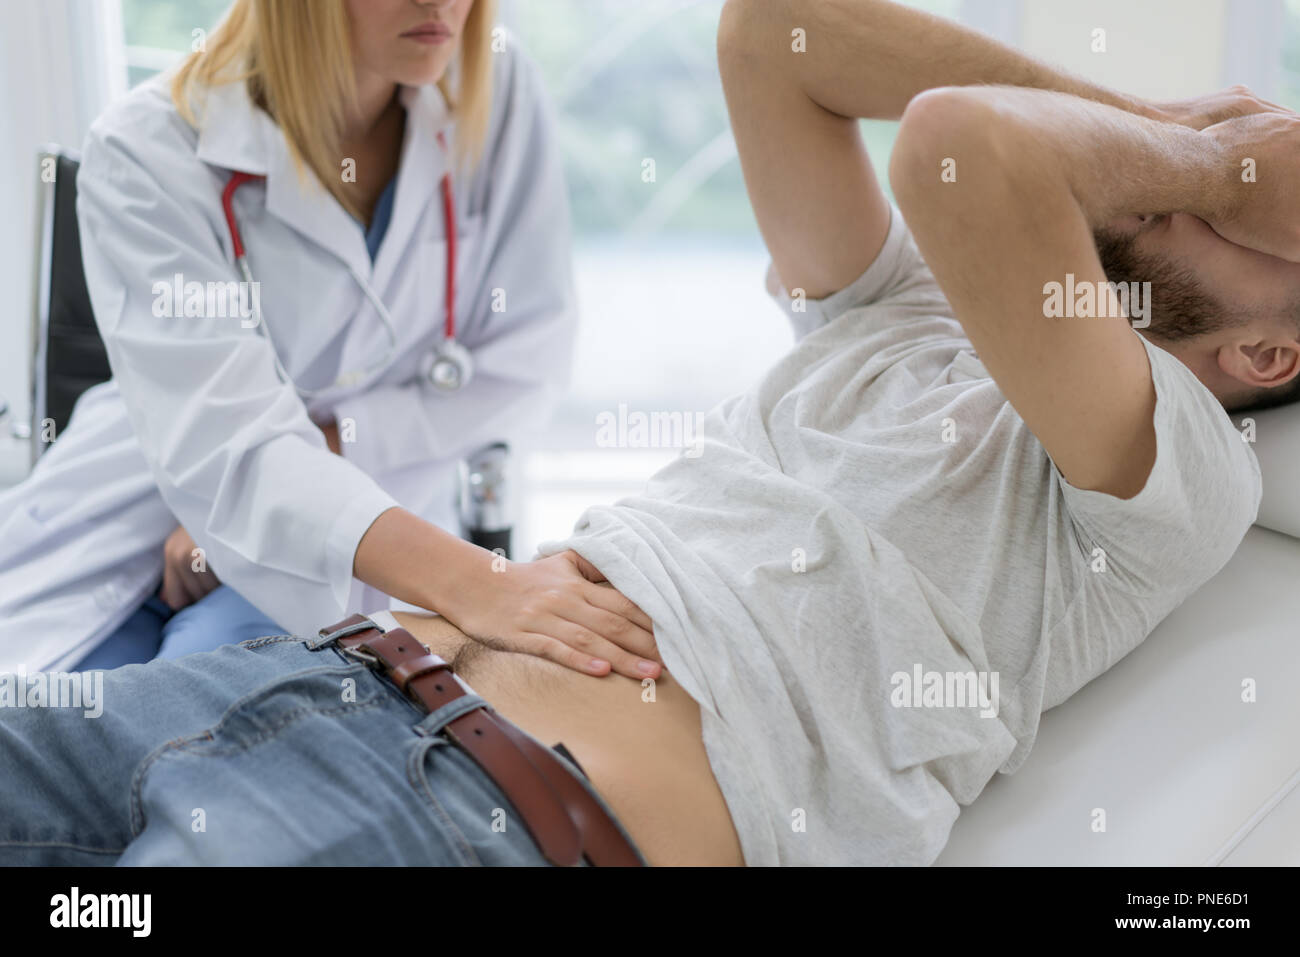 Enfermos y dolor de estómago al hombre que está siendo examinado por el médico. Doctor presionando su estómago del paciente, control del área de dolor Foto de stock